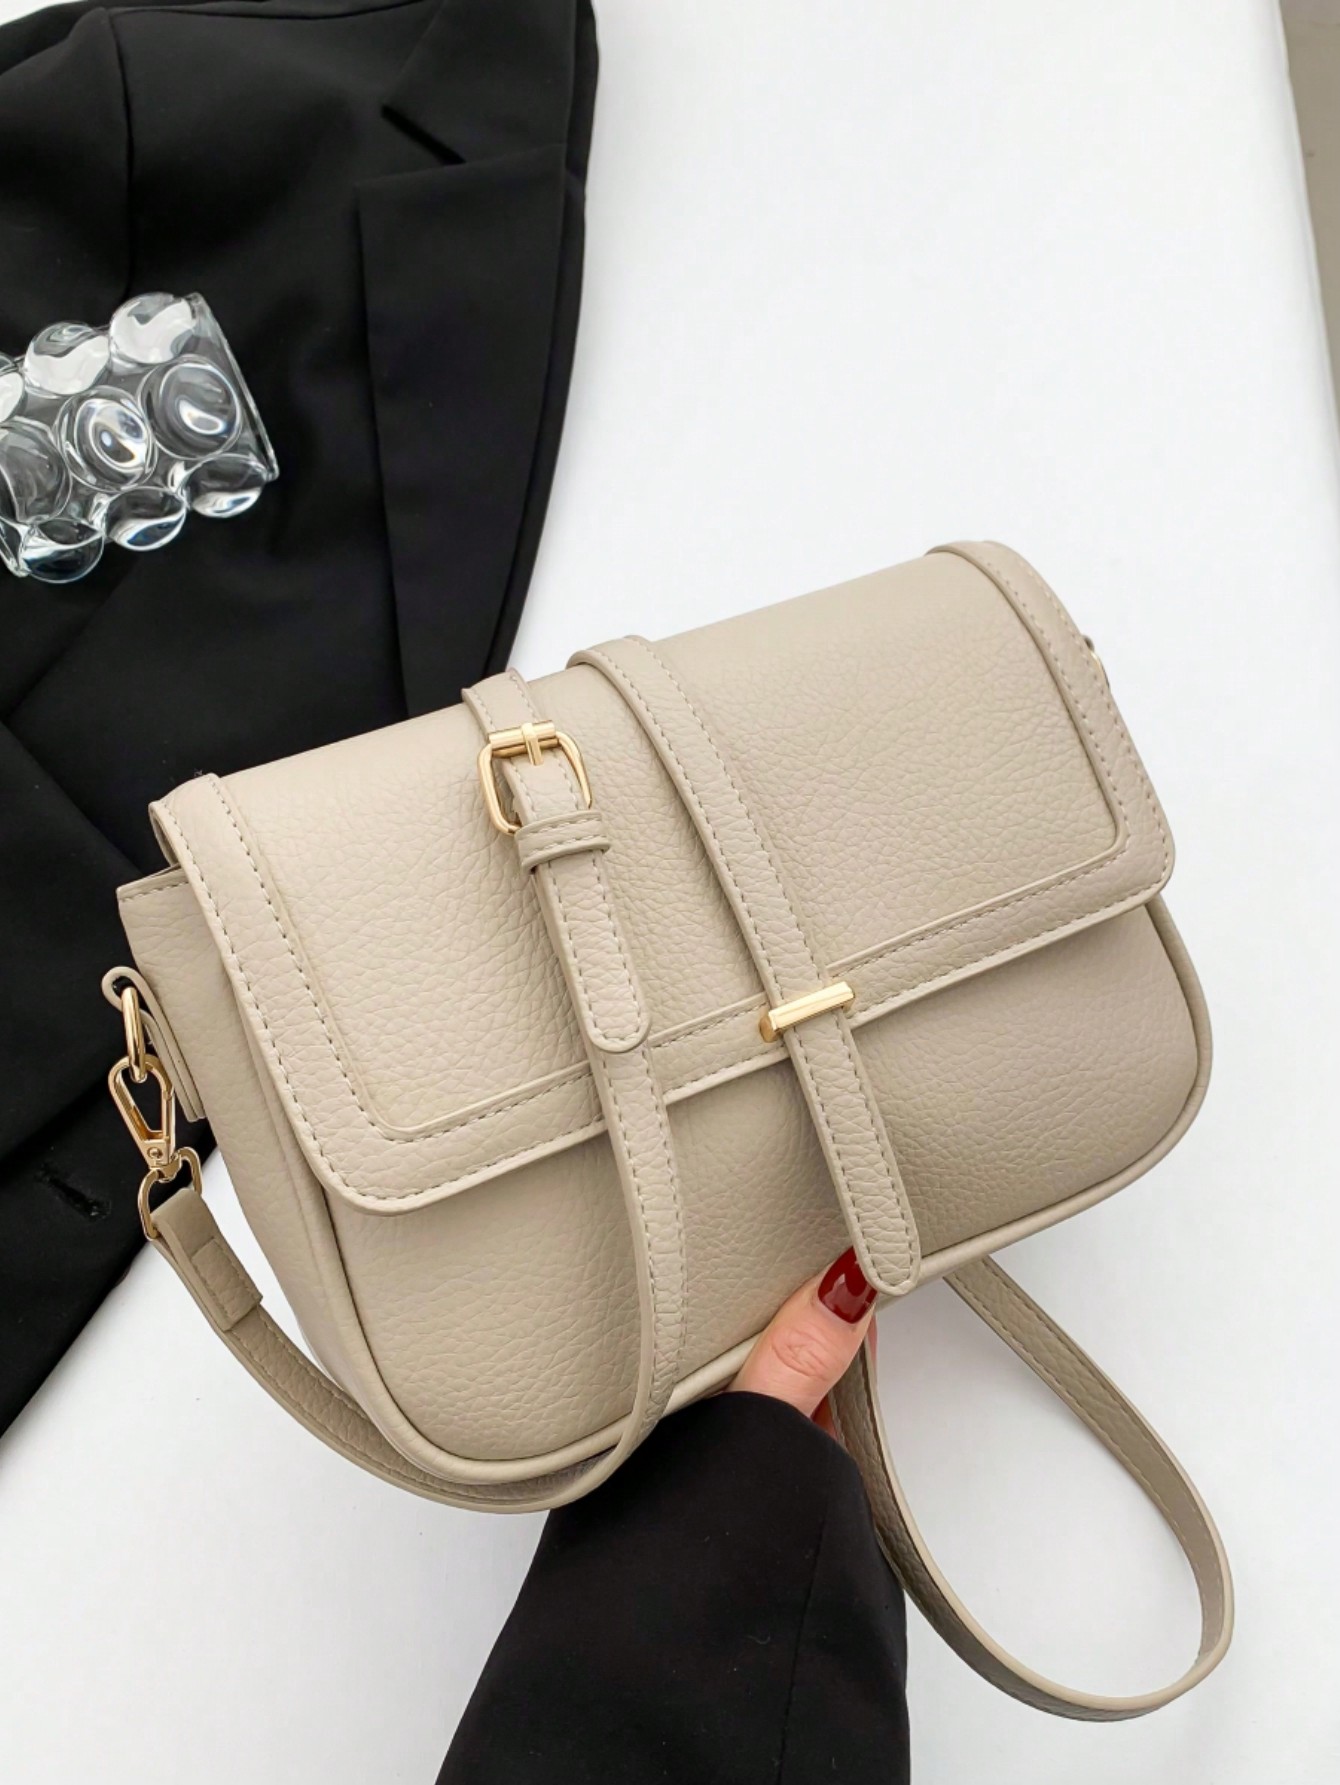 рюкзак на плечо 17 дюймов в винтажном стиле для путешествий Модная квадратная сумка из искусственной кожи в минималистском стиле с металлическим декором и клапаном, бежевый